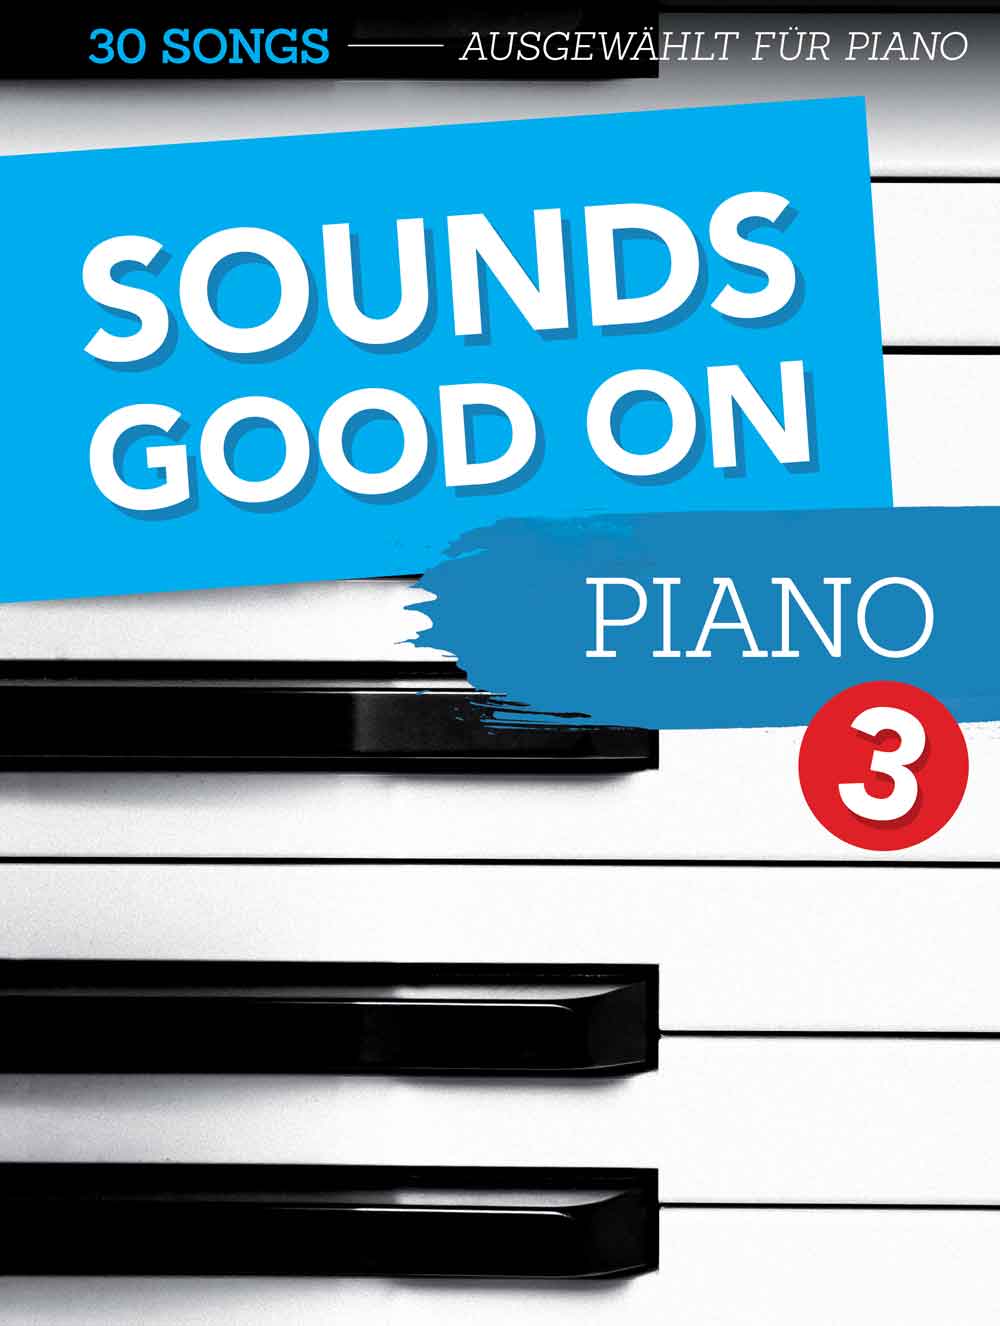 Sounds Good On Piano 3: 30 Songs speziell ausgewählt für Klavier